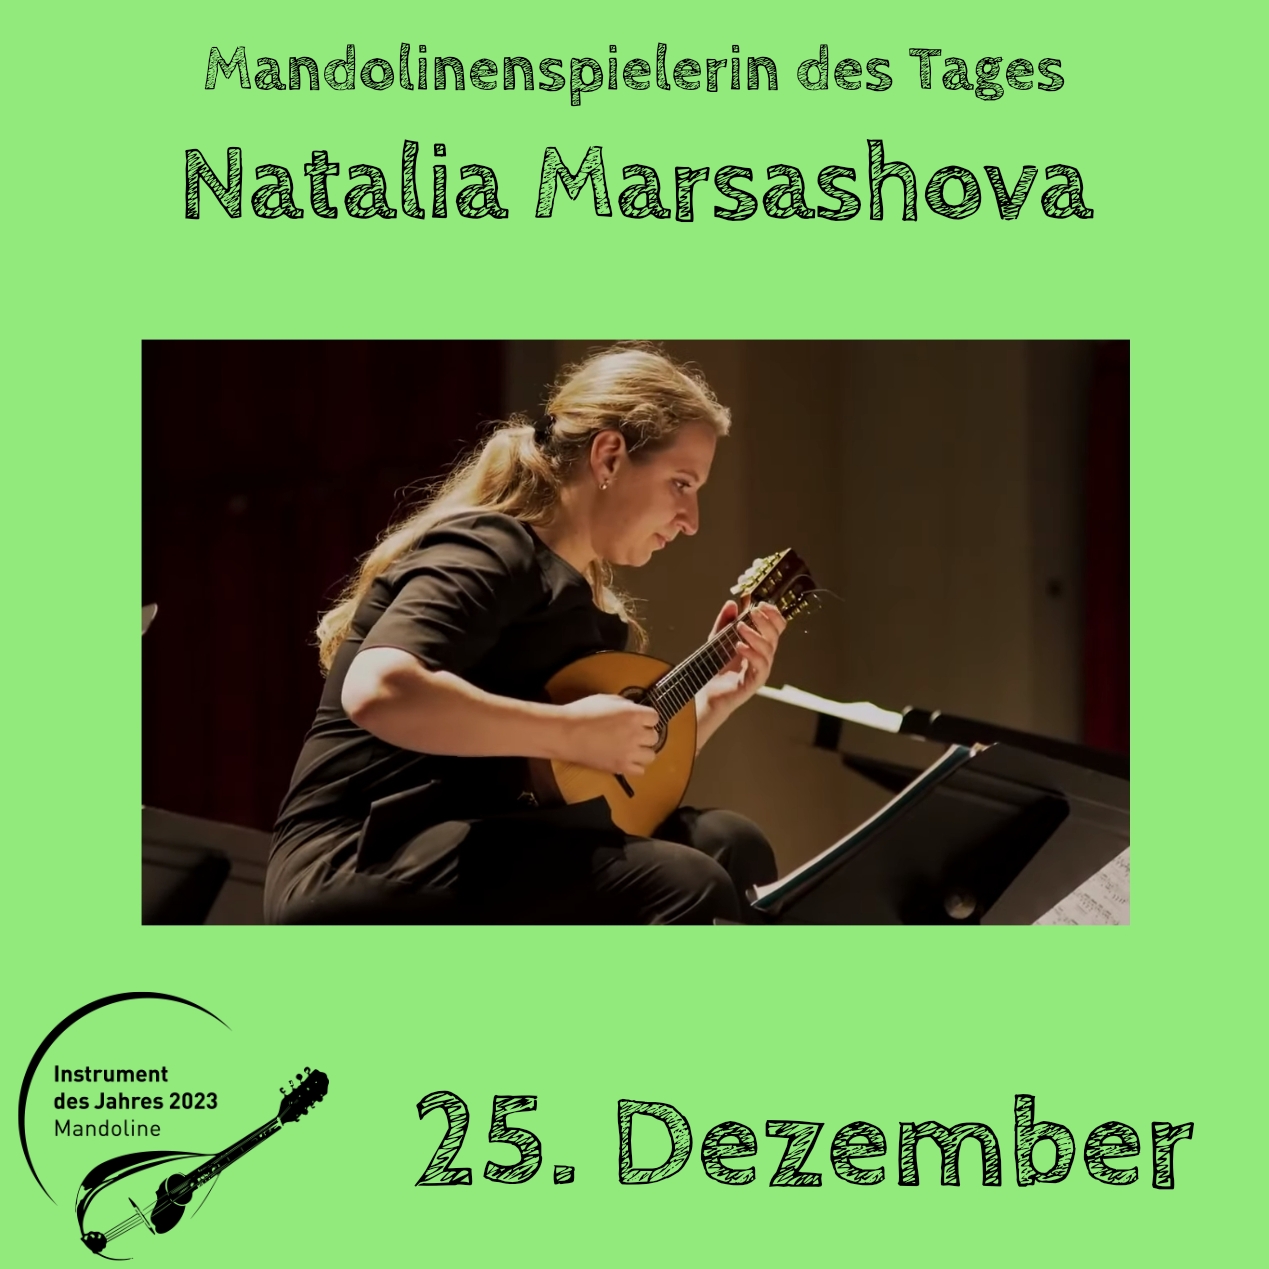 25. Dezember - Natalia Marashova Instrument des Jahres 2023 Mandolinenspieler Mandolinenspielerin des Tages